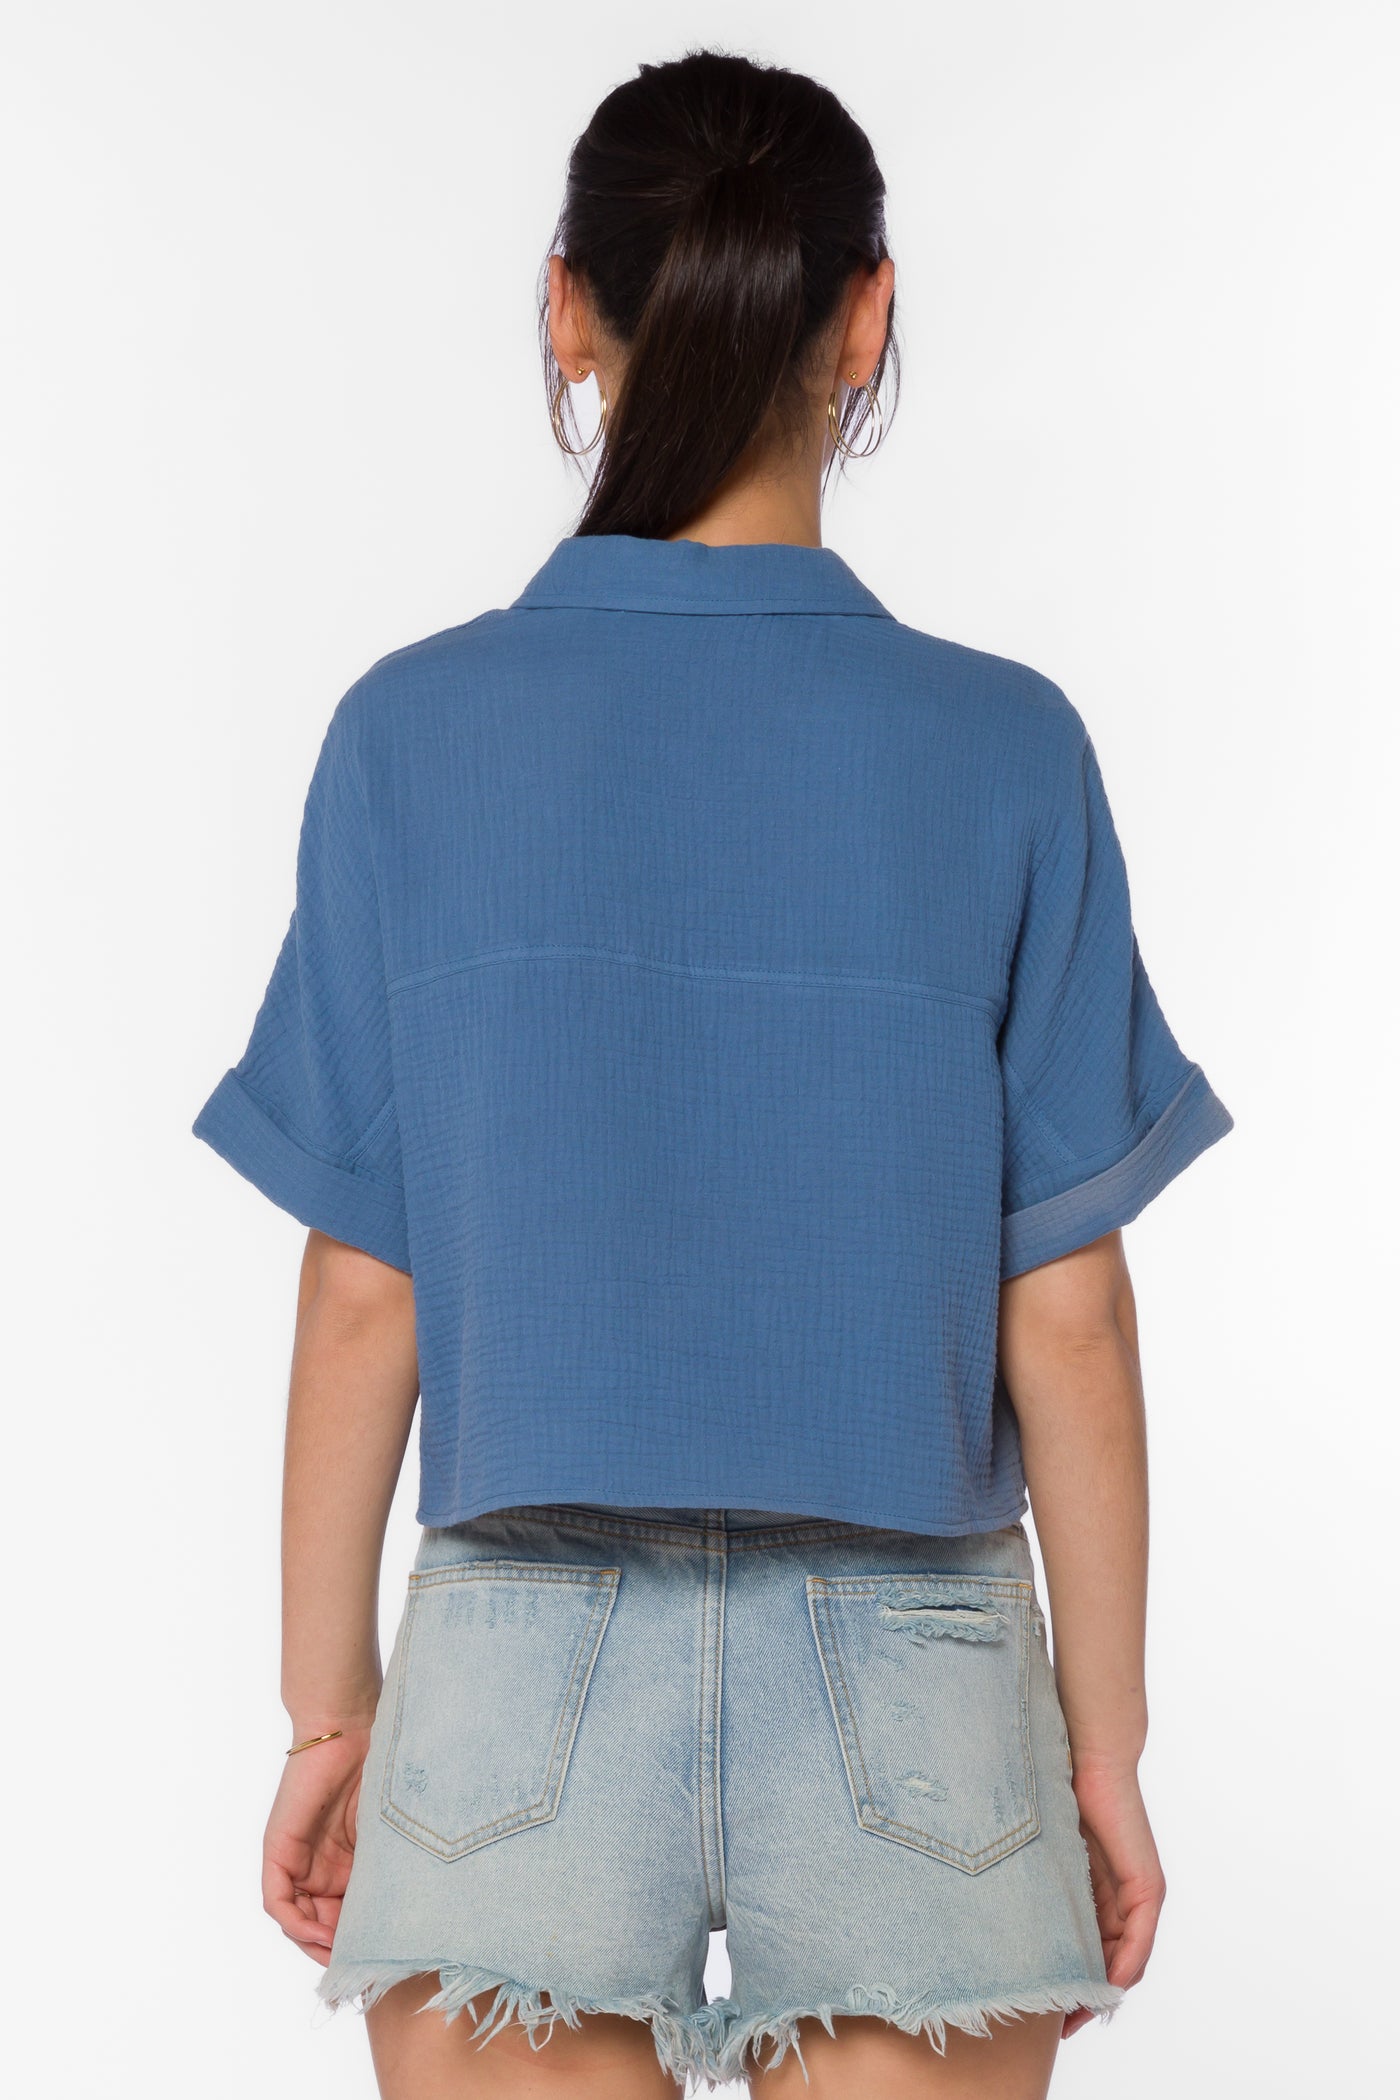 Trista Vintage Blue Shirt - Tops - Velvet Heart Clothing